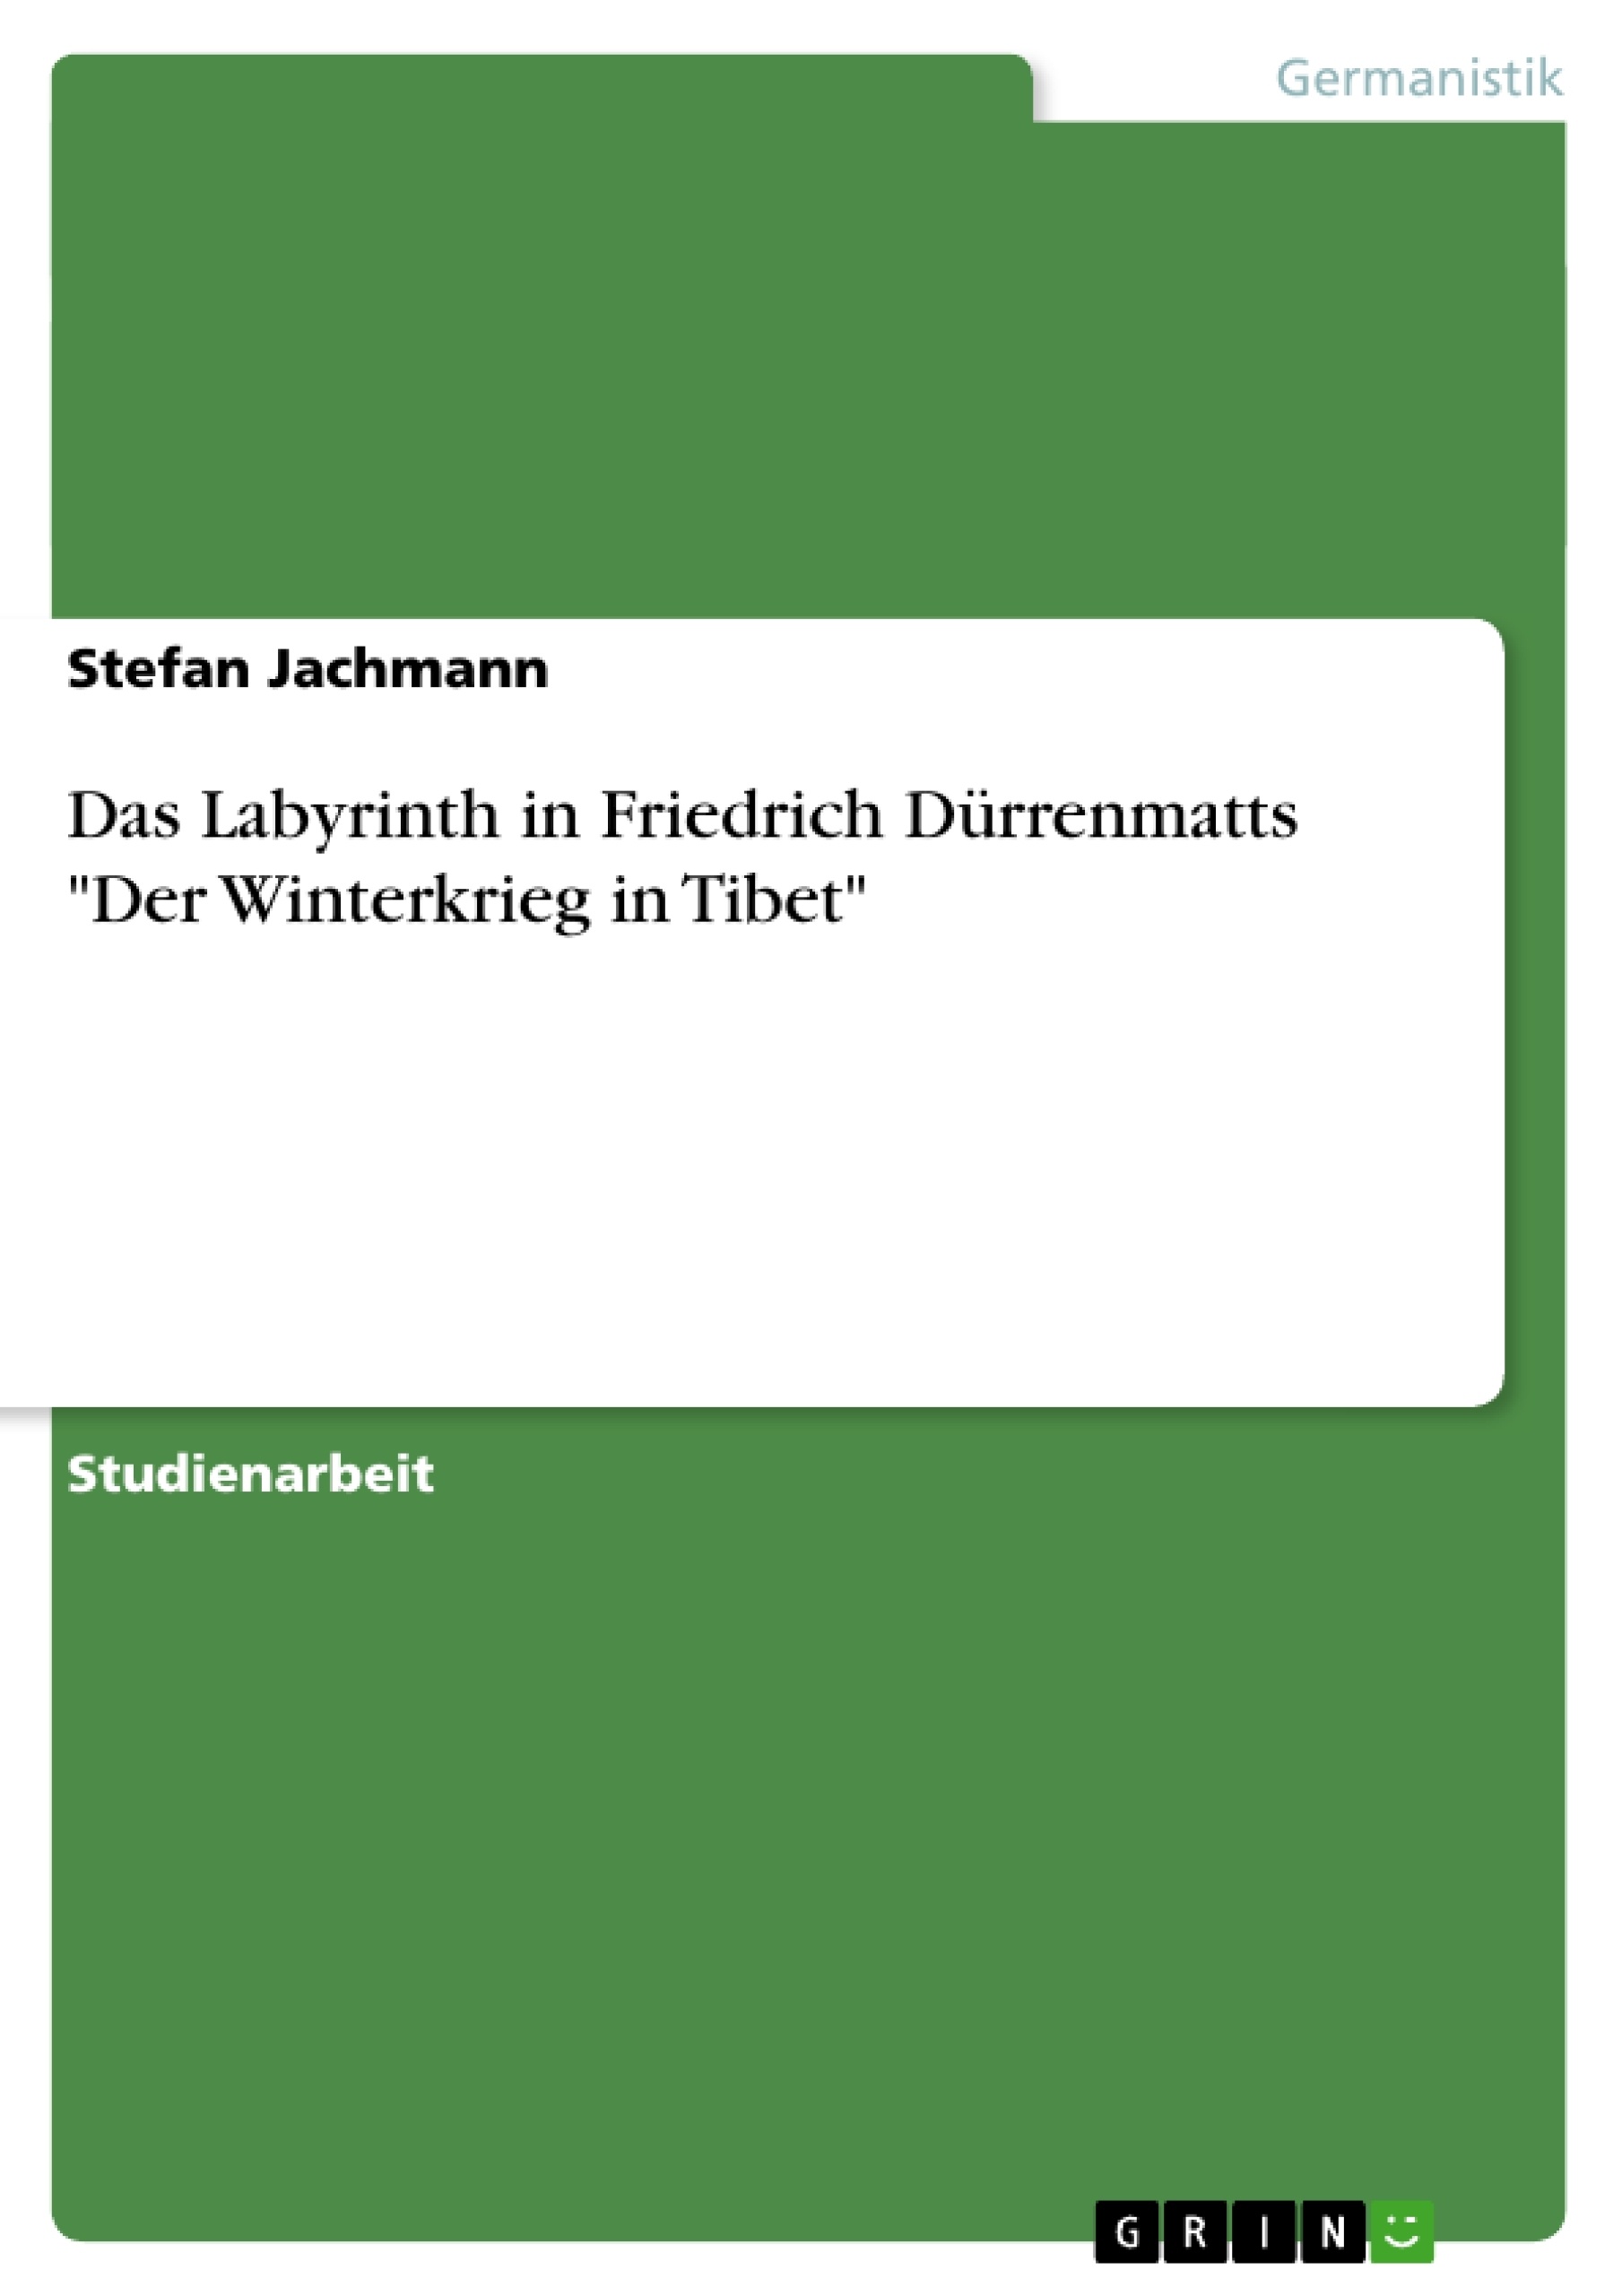 Titre: Das Labyrinth in Friedrich Dürrenmatts "Der Winterkrieg in Tibet"